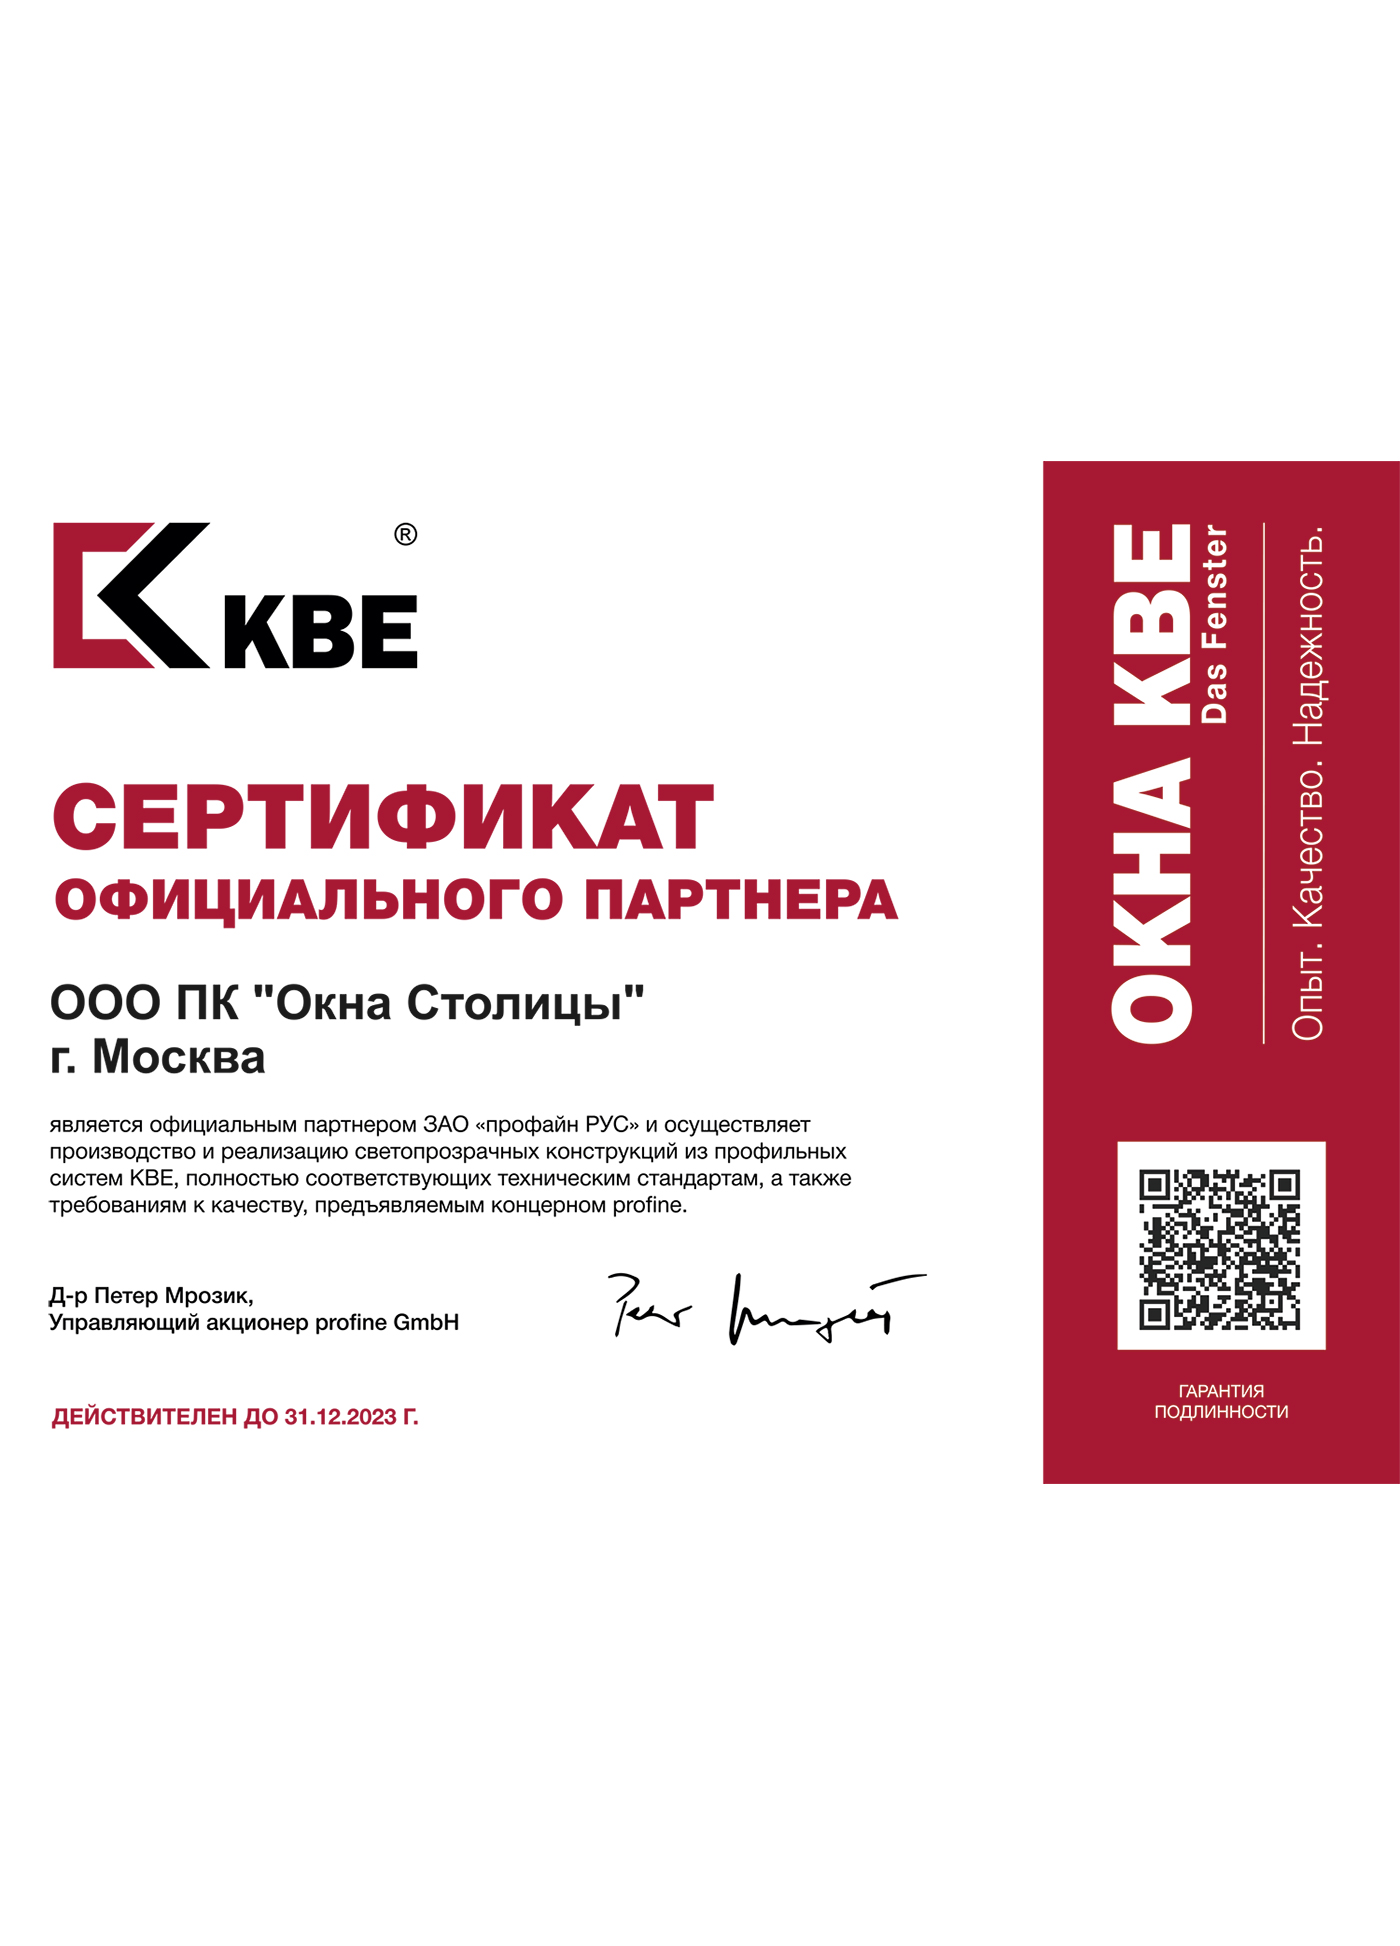 profine RUS (KBE), сертификат официального партнера, 31.12.2023